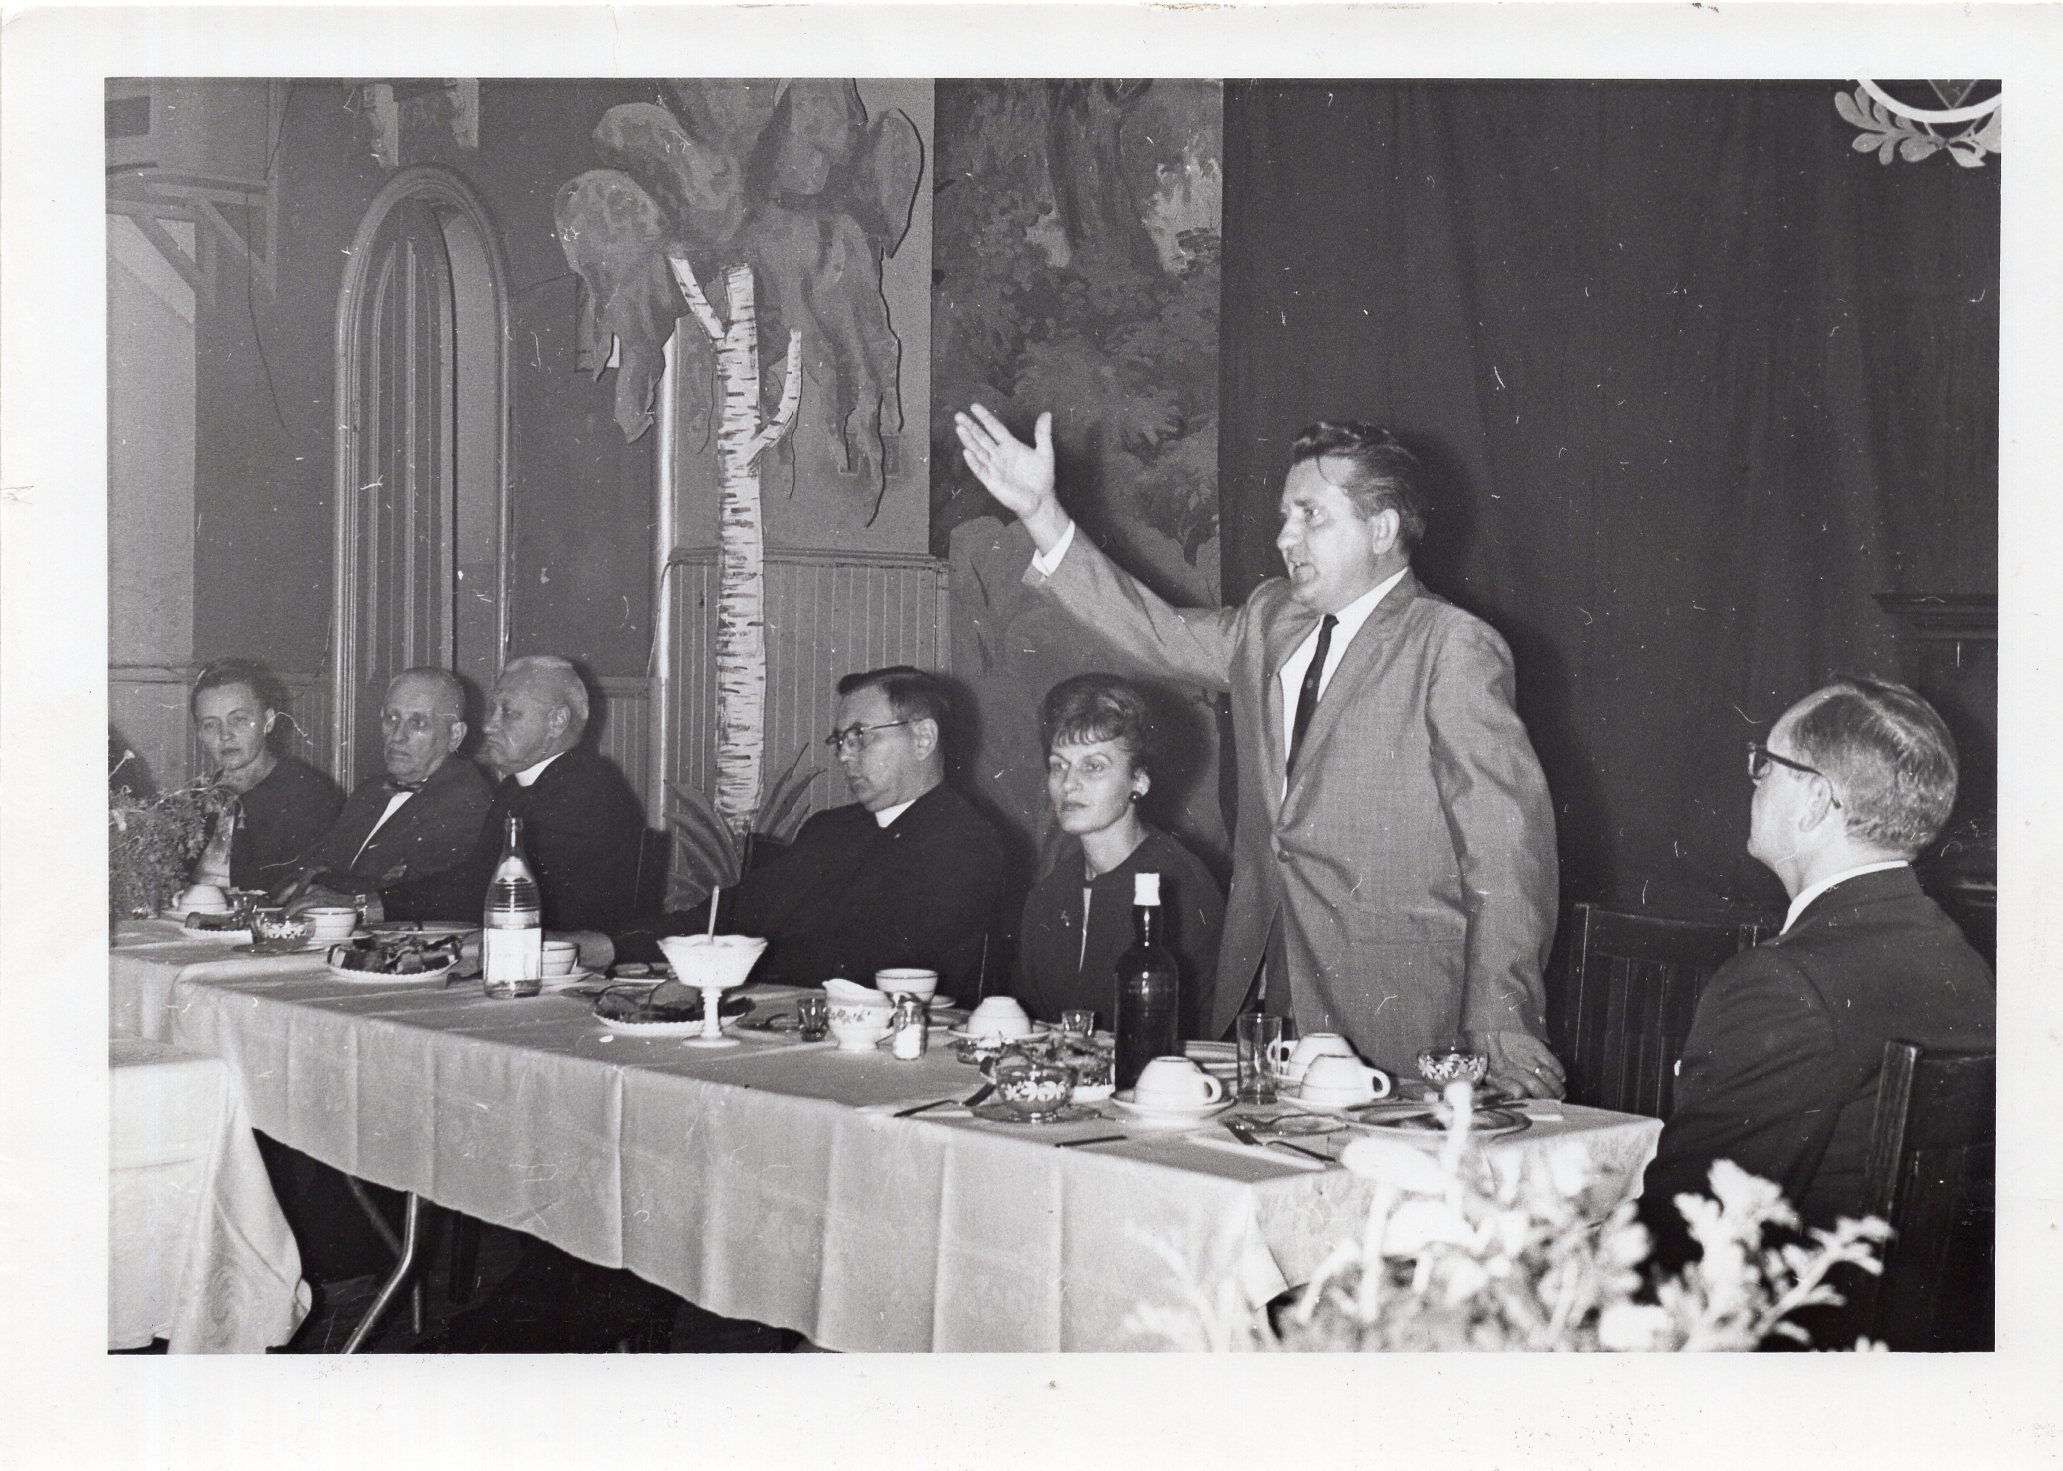 Iš kairės antras prof. A. Salys, trečias – V. Maciūnas, penkta – B. Volertienė, šeštas – V. Volertas. JAV, apie 1970 m.